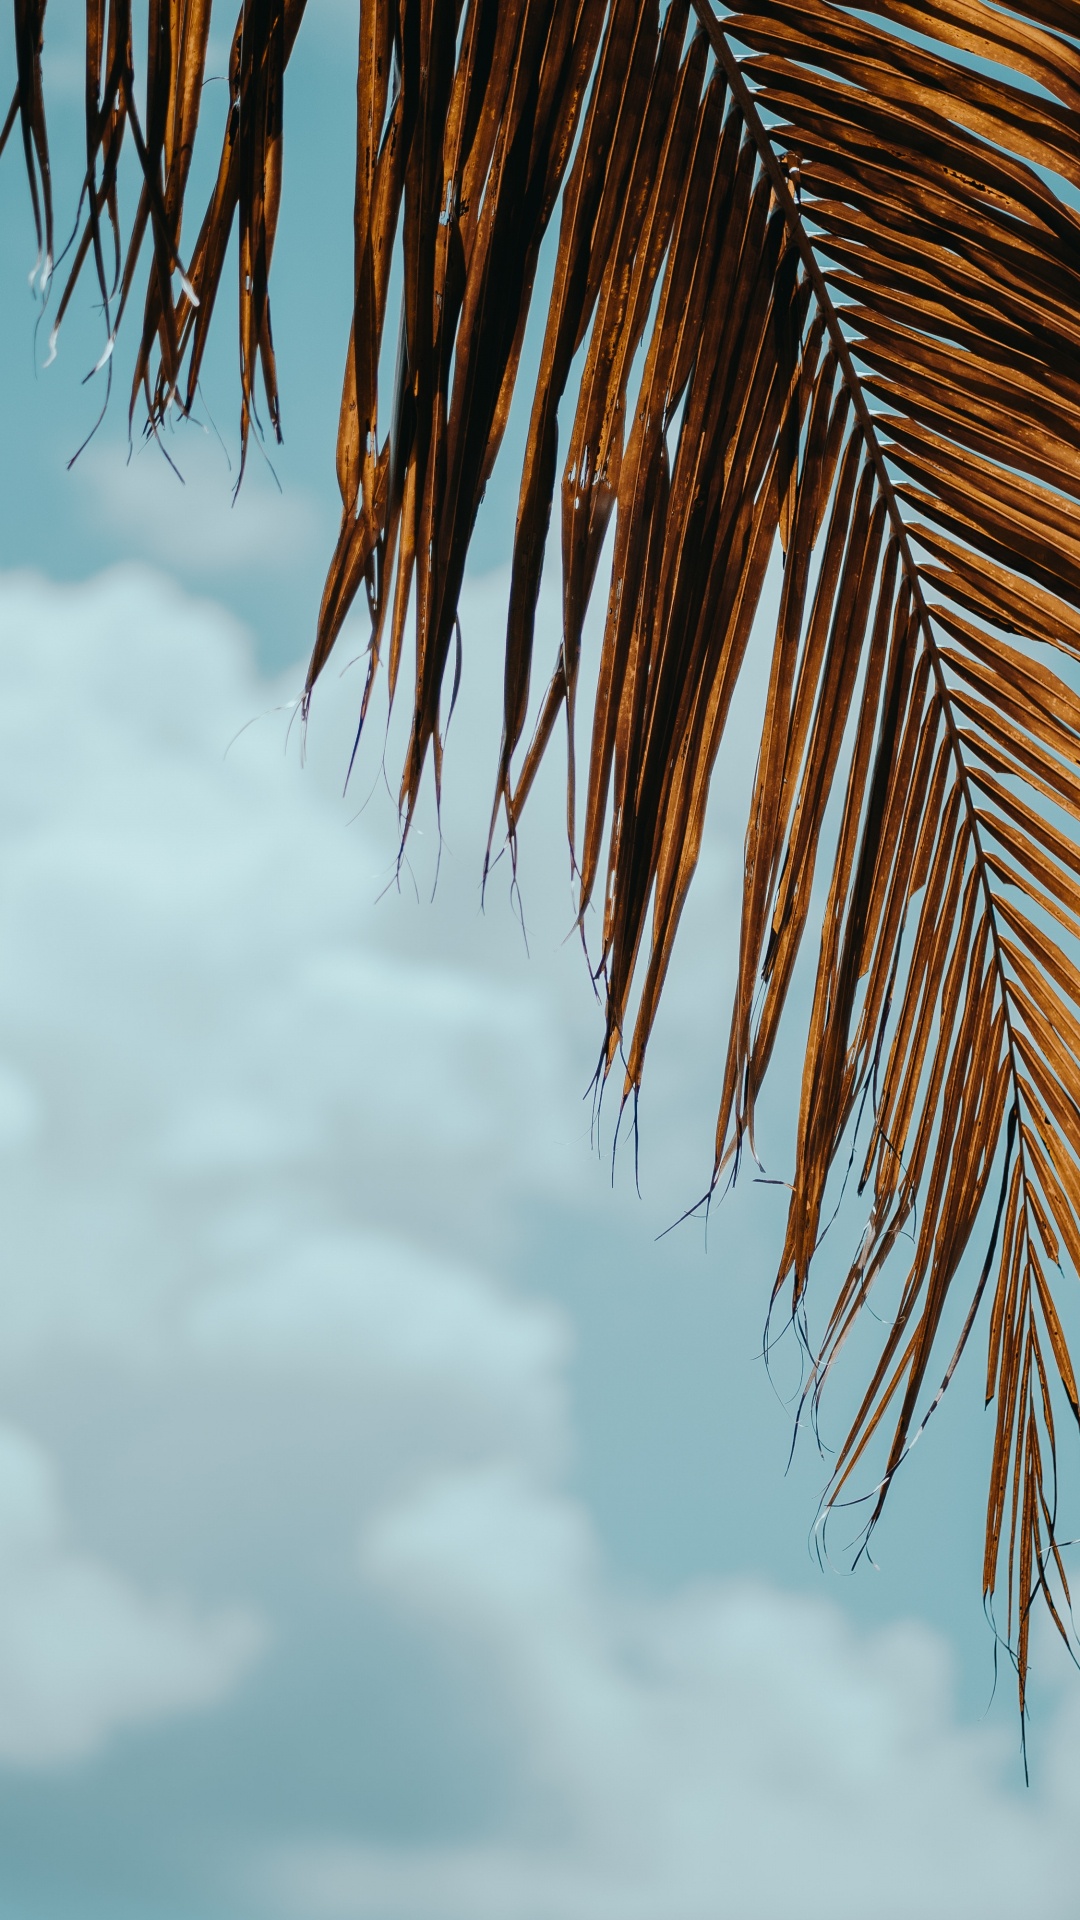 棕榈树, 热带地区, 木本植物, 云计算, 一天 壁纸 1080x1920 允许